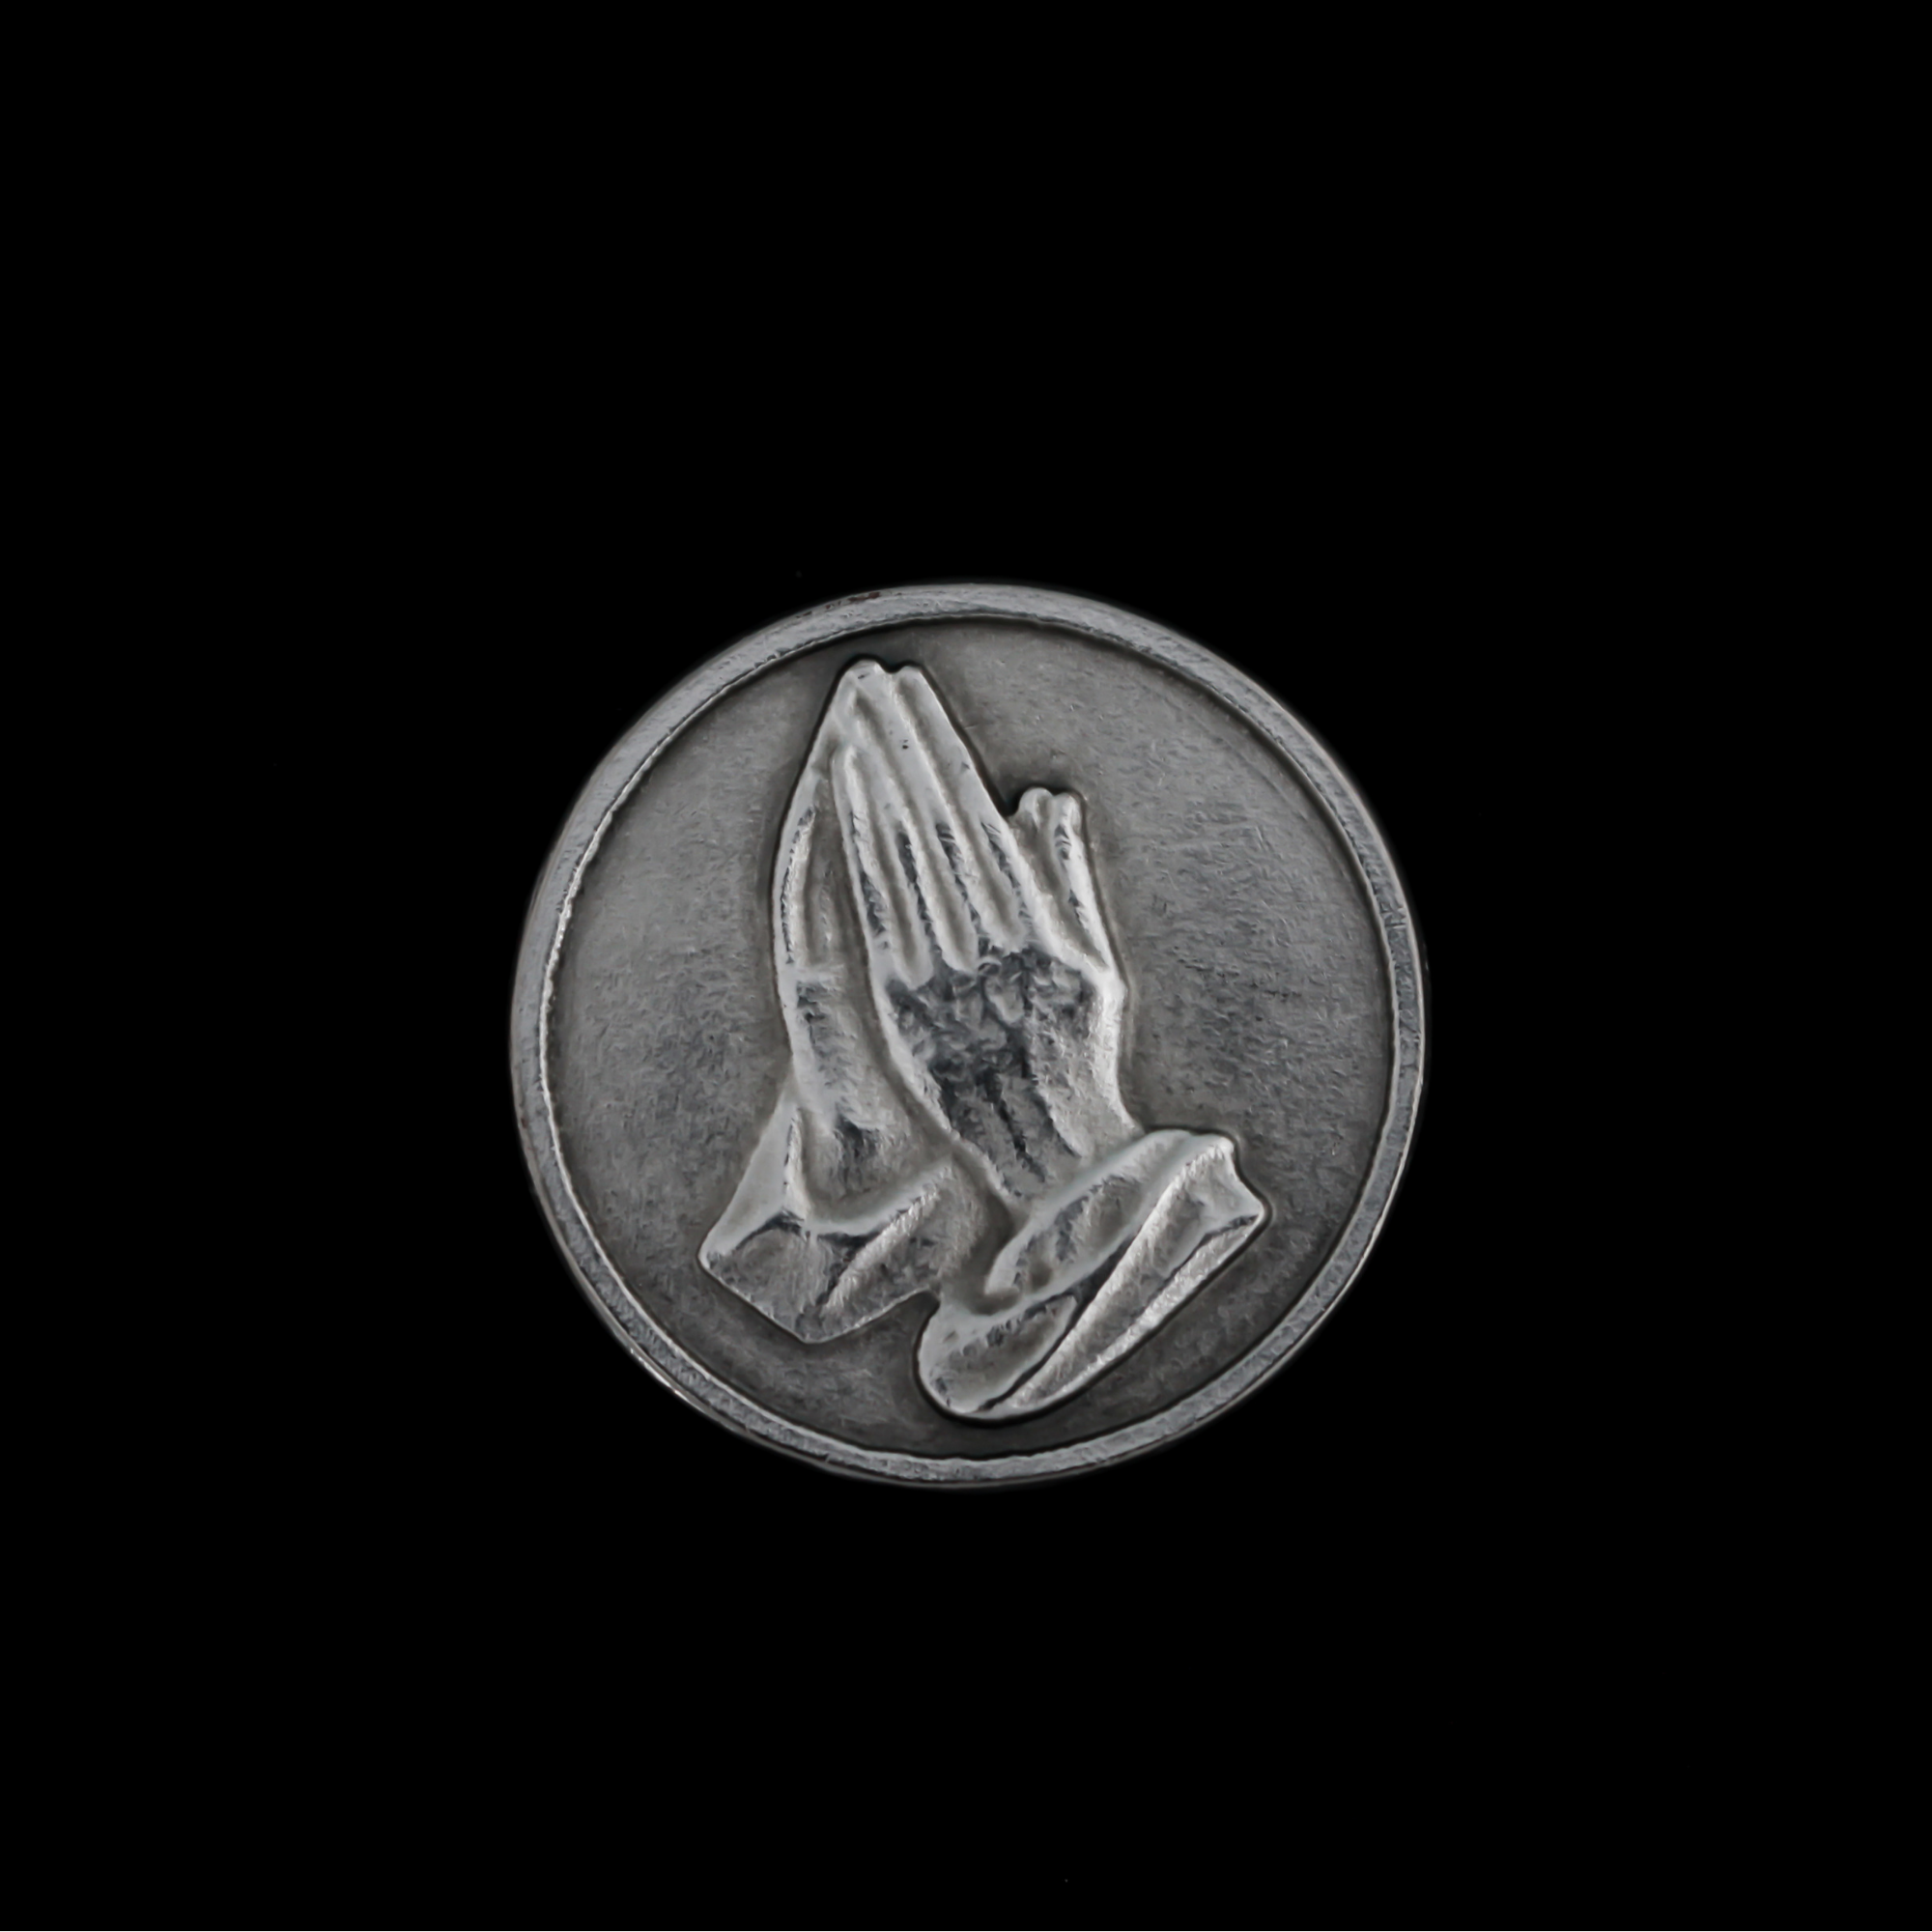 Serenity Prayer Pocket Token, 30mm in Diameter - Made in Italy